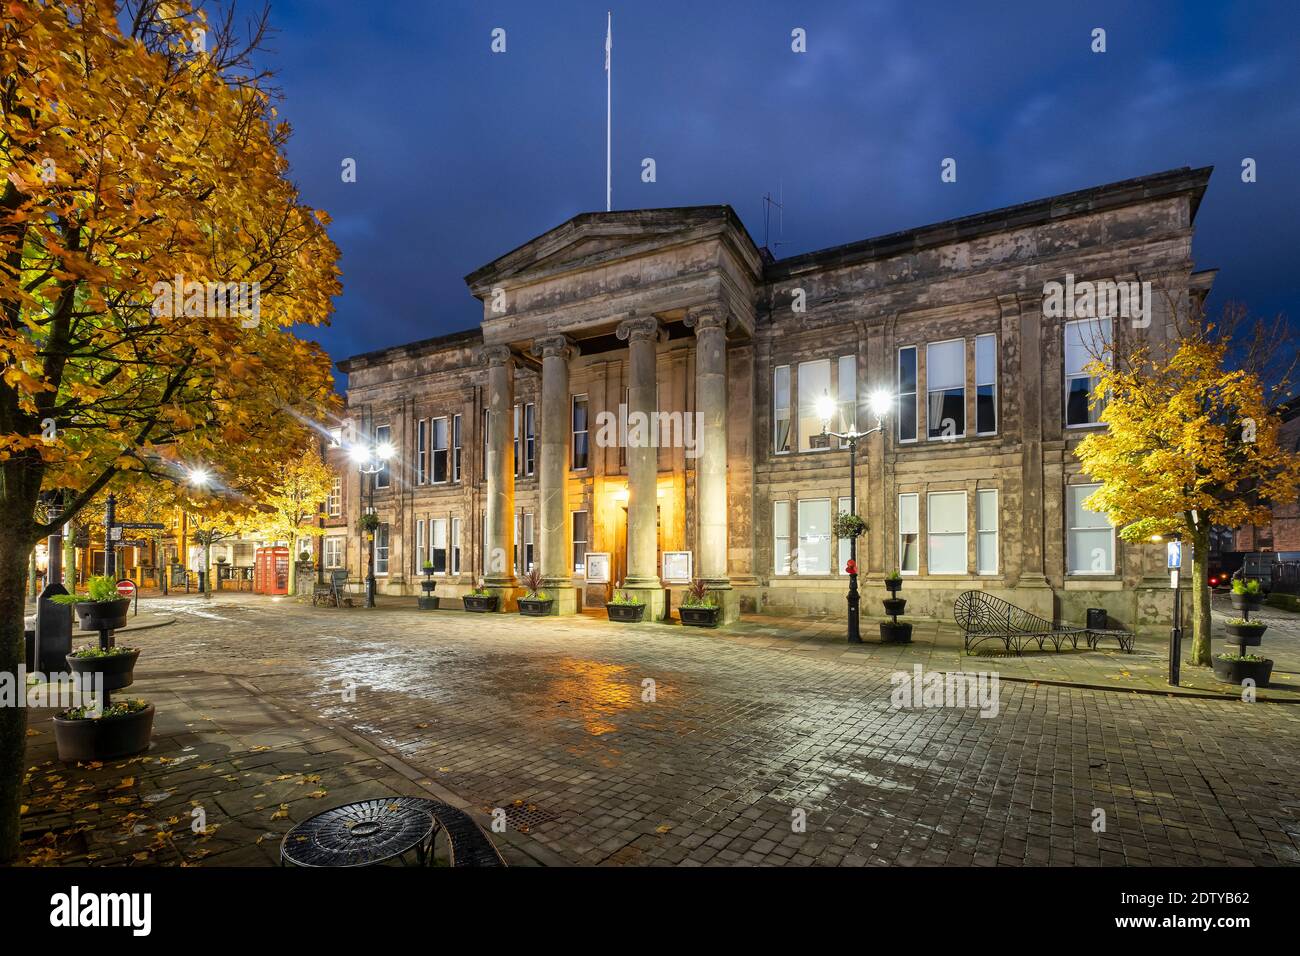 Hôtel de ville de Macclesfield la nuit en automne, place du marché, Macclesfield, Cheshire, Angleterre, Royaume-Uni Banque D'Images